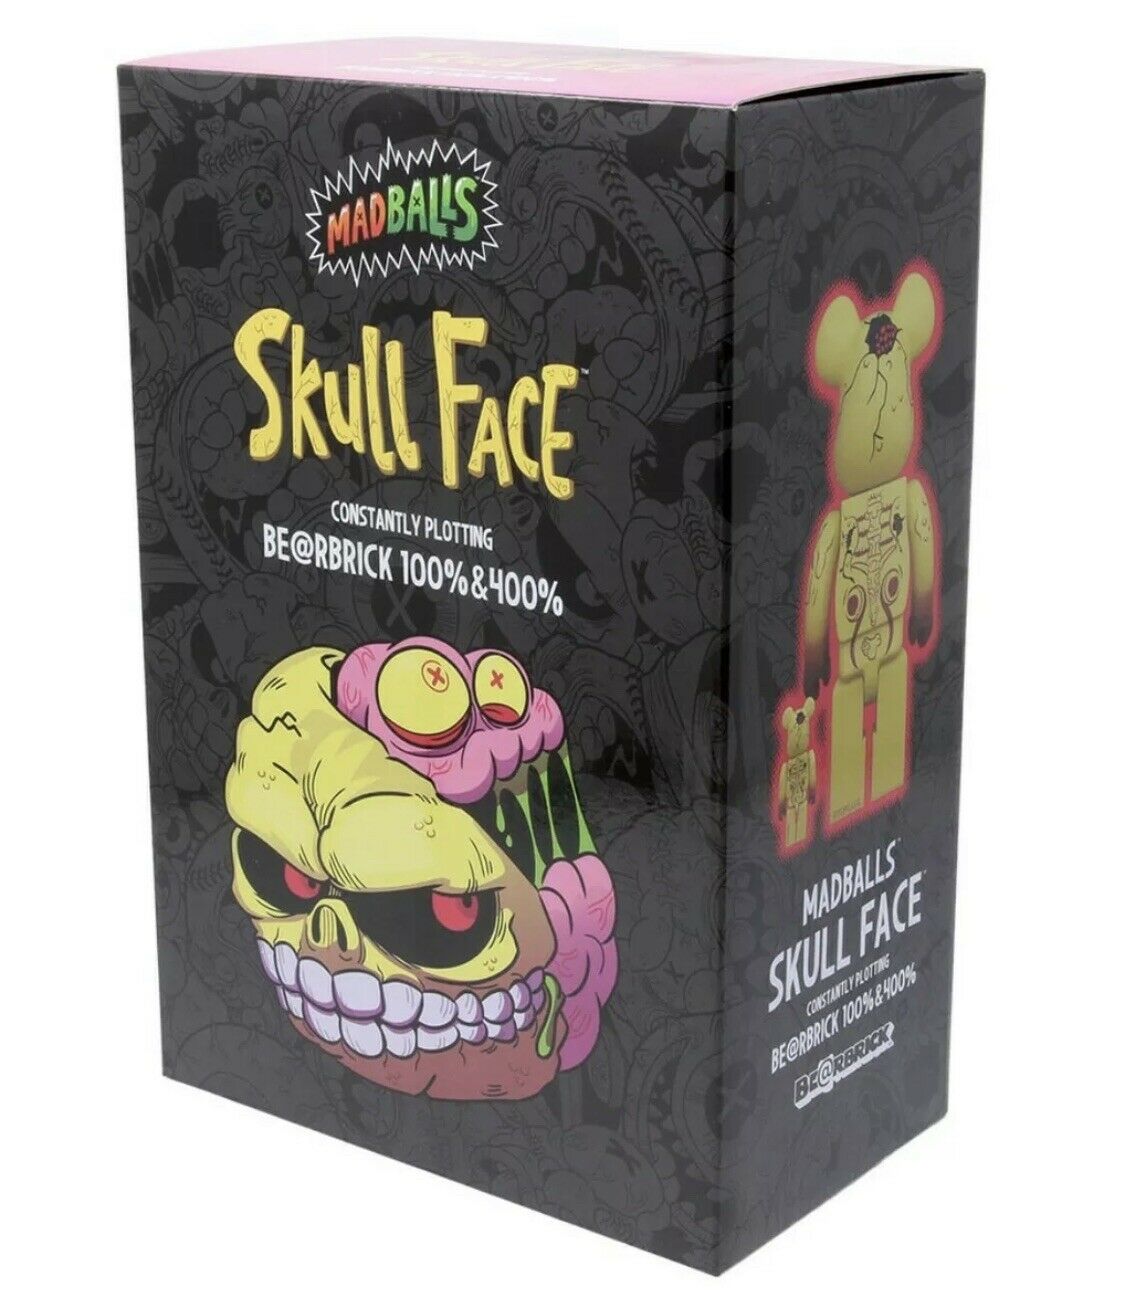 Skull Face Mad Balls 100% + 400% Bearbrick Set by Medicom Toy